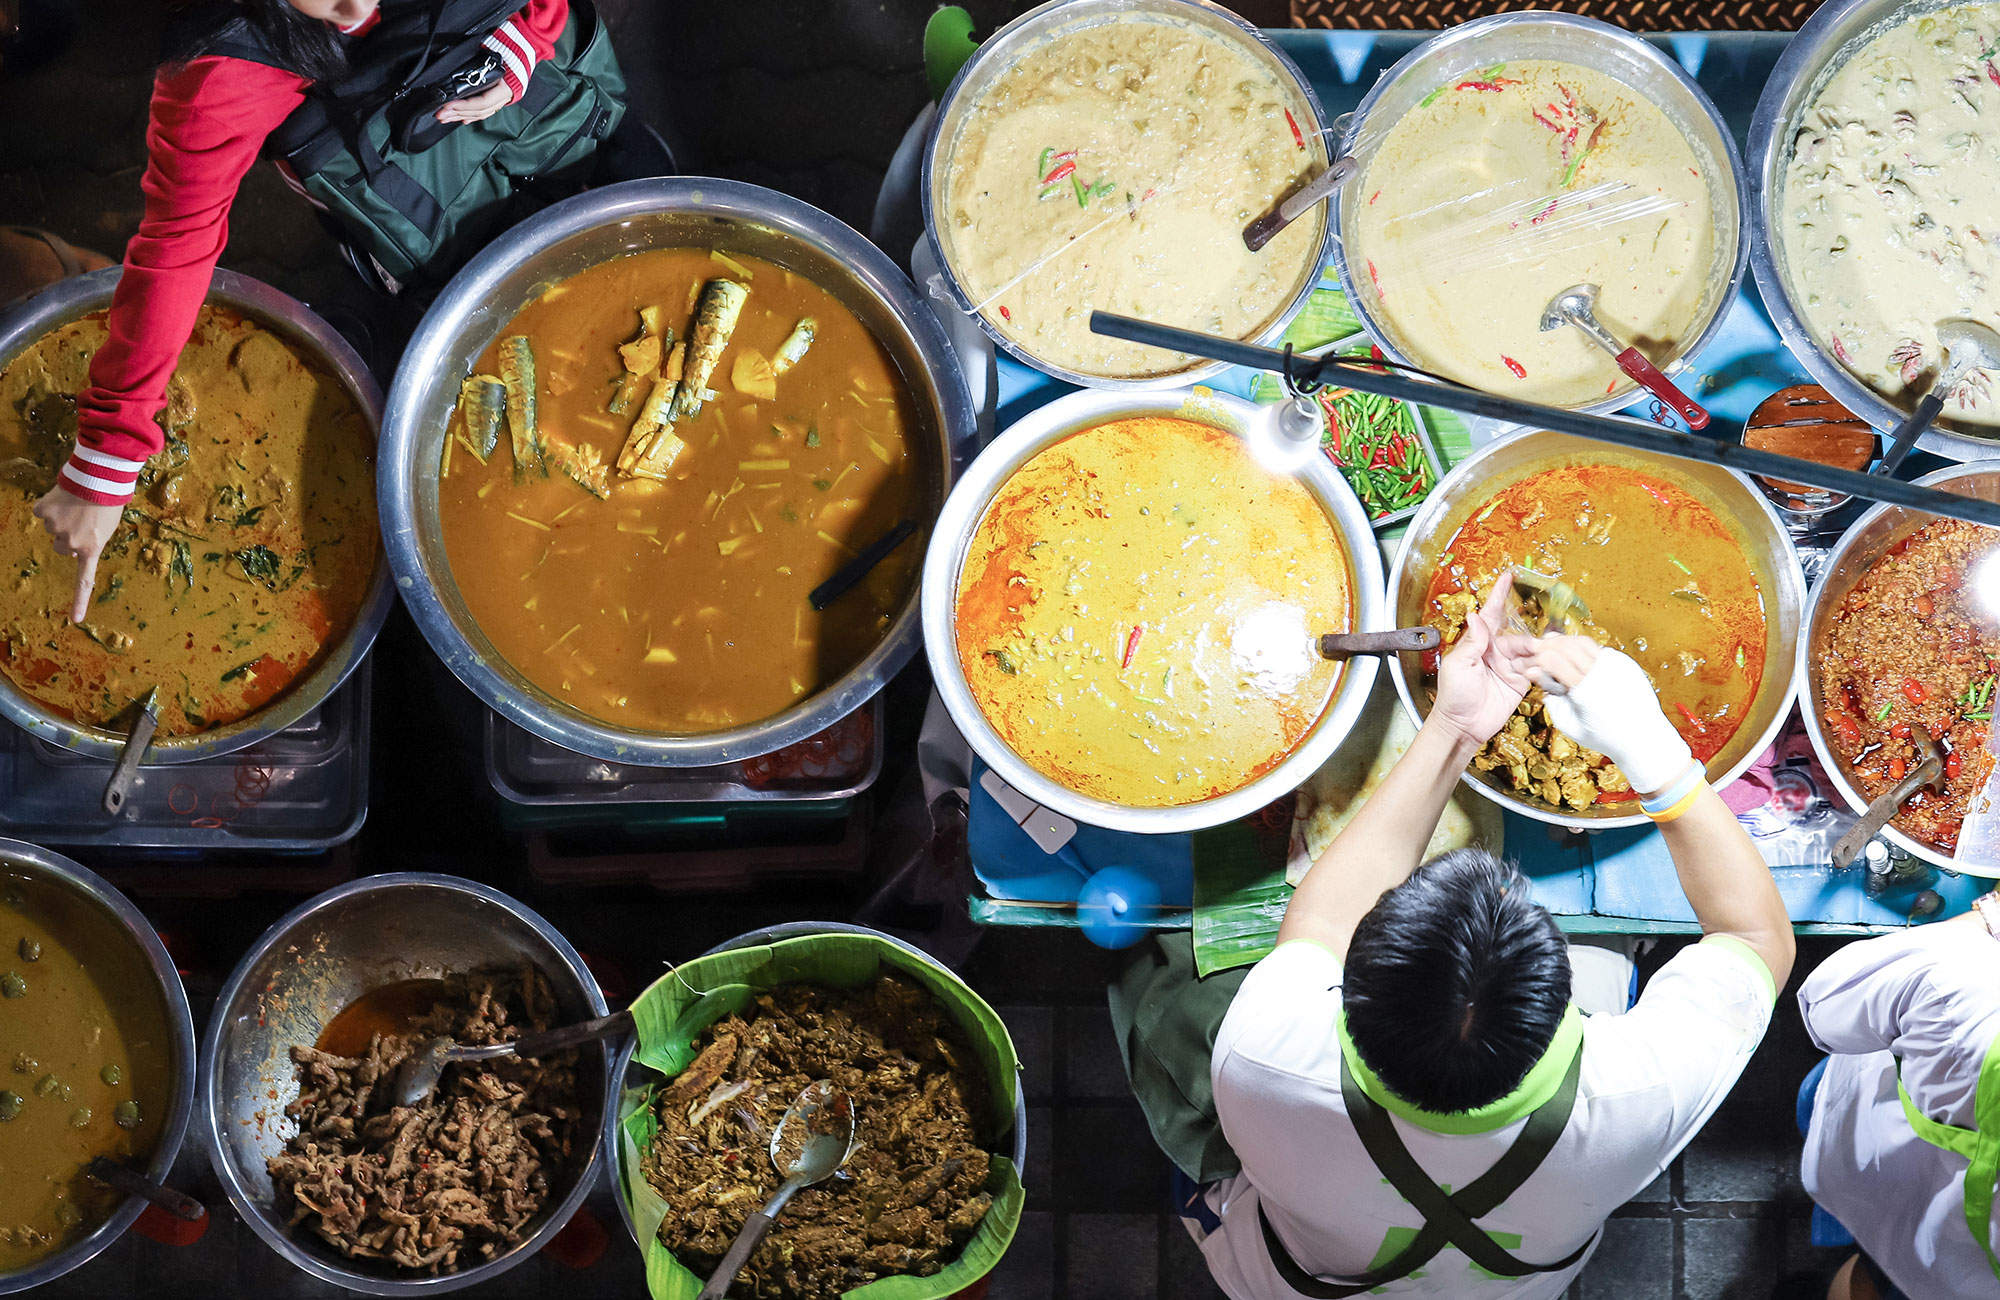 Bezoek de grootste markt van Zuidoost-Azië tijdens je overstap in Bangkok